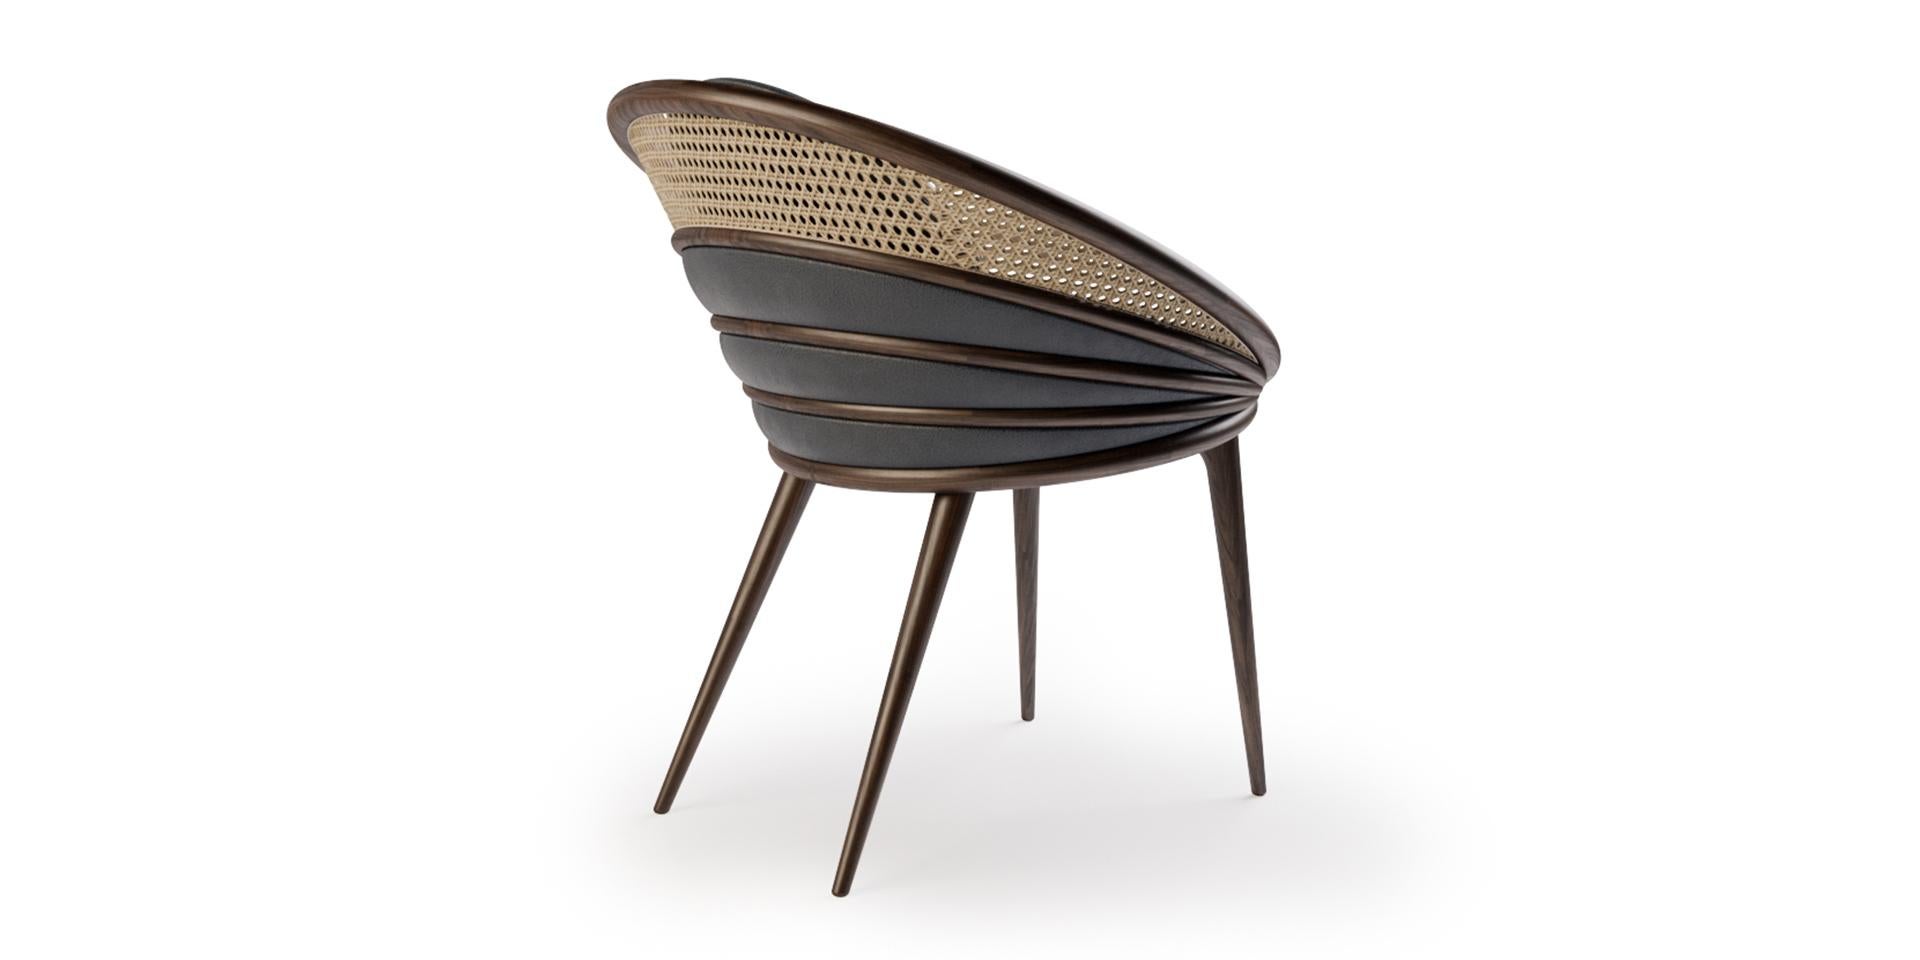 La chaise de salle à manger Ndebele, fabriquée en noyer, nous apporte cette combinaison d'art et de fonction. Ses courbes contrastent avec l'élégance de l'épaisseur et créent une chaise sophistiquée et moderne. La forme ronde garantit le confort et